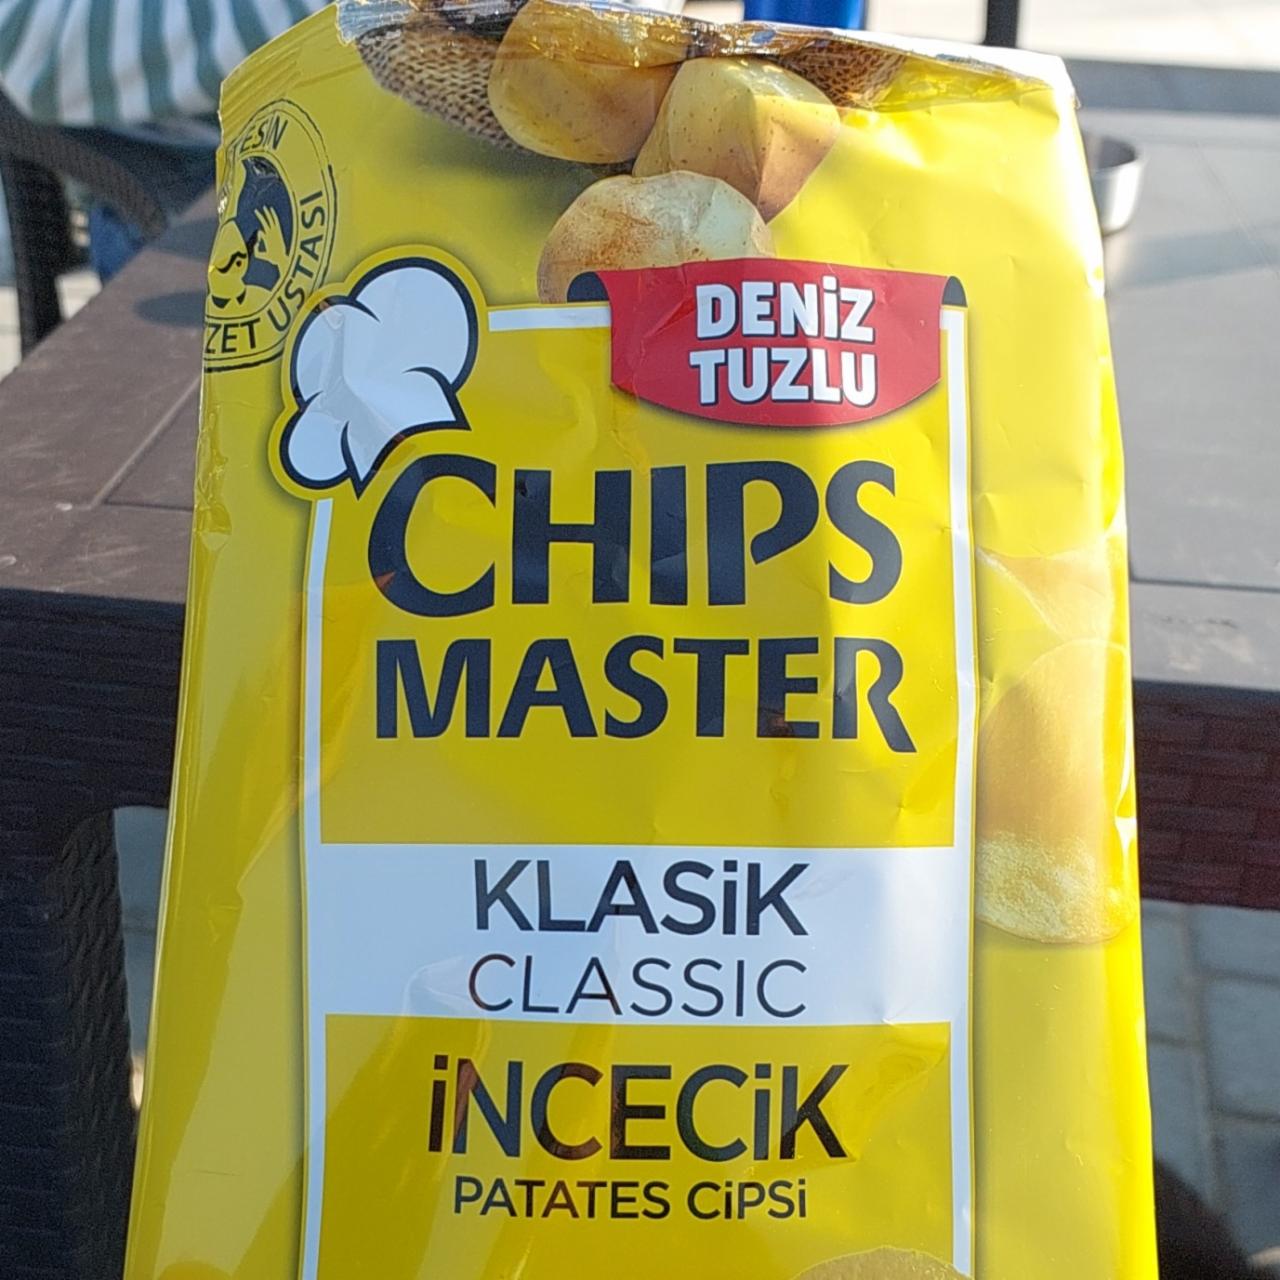 Фото - Чипсы incecik Klassik Chips Master Deniz Tuzlu